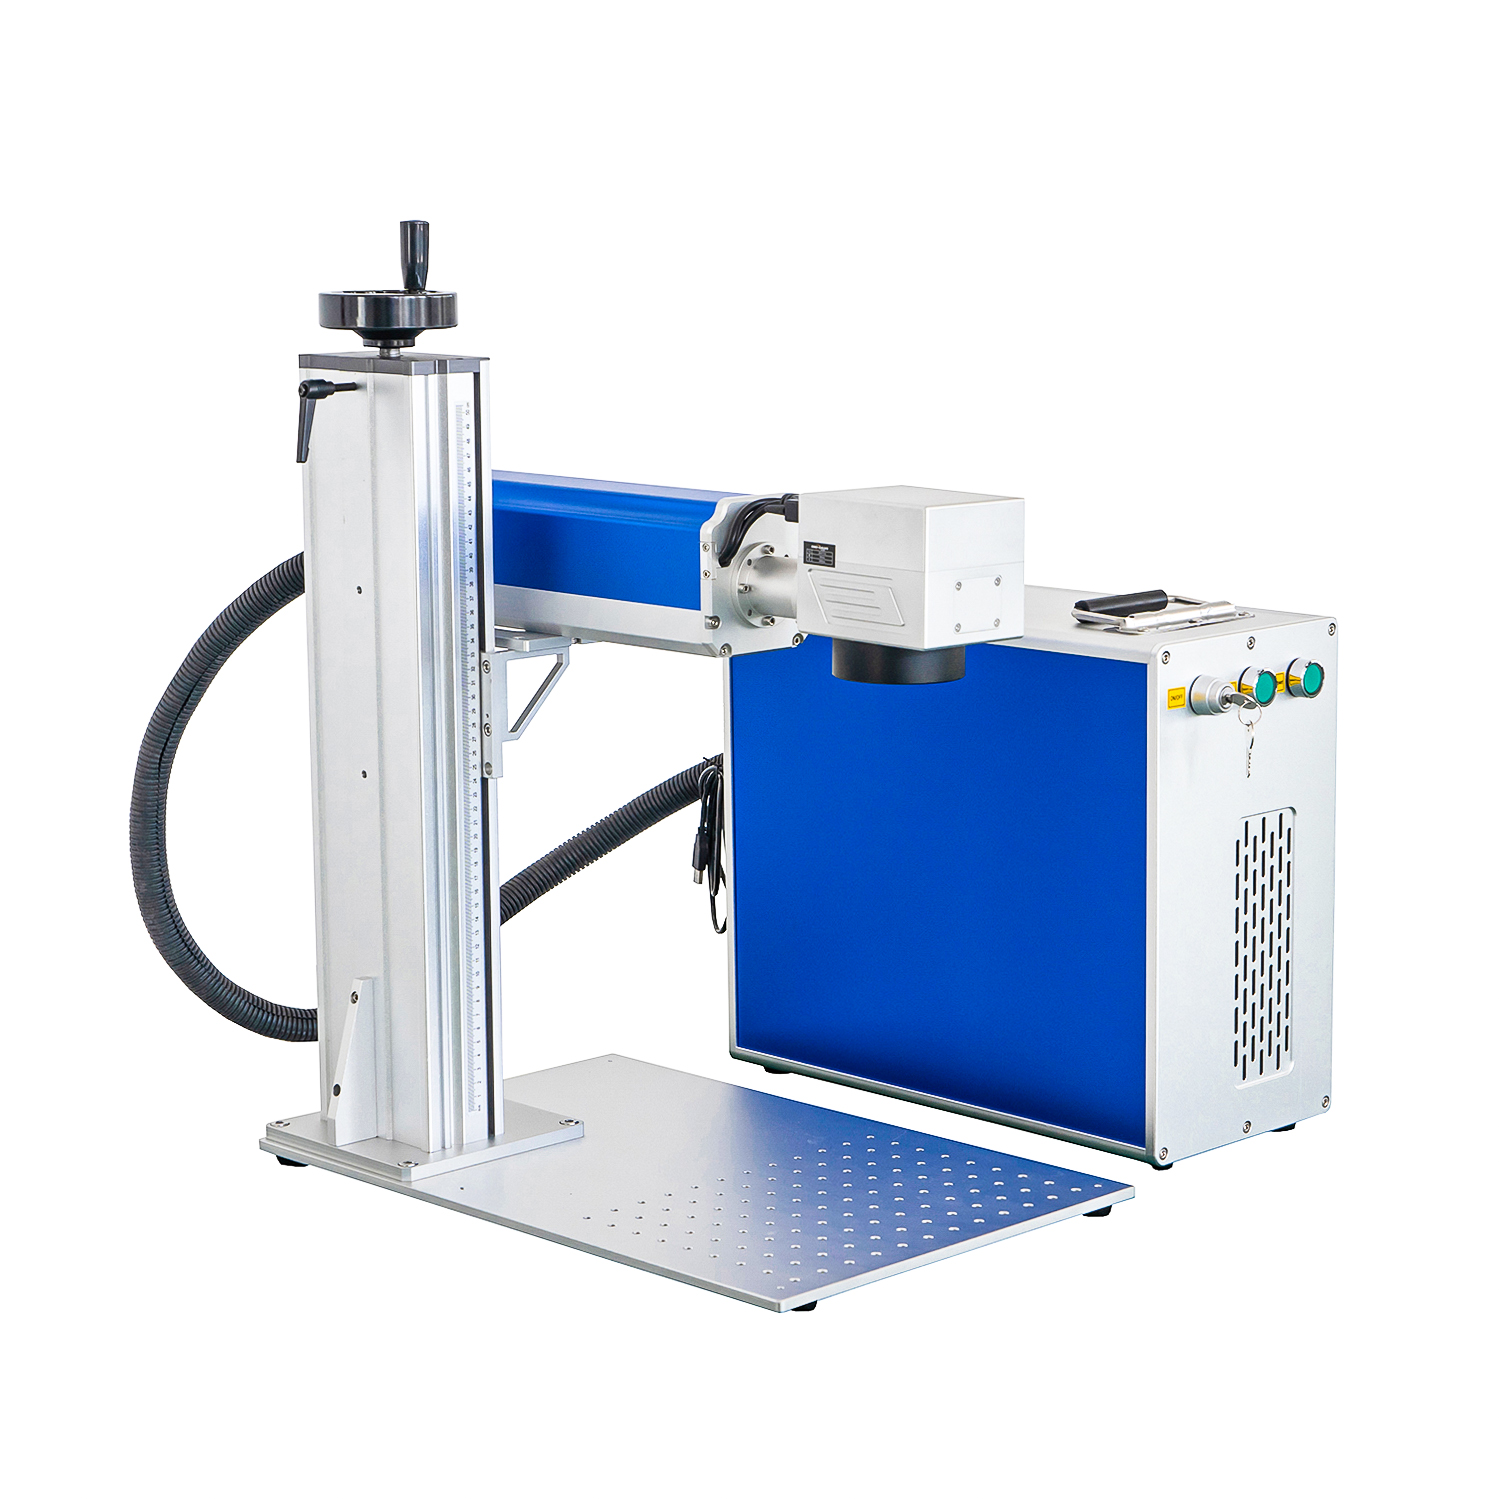 Jpt Faserlaserbeschriftungsmaschine 30w für Faserbeschriftungsmaschine